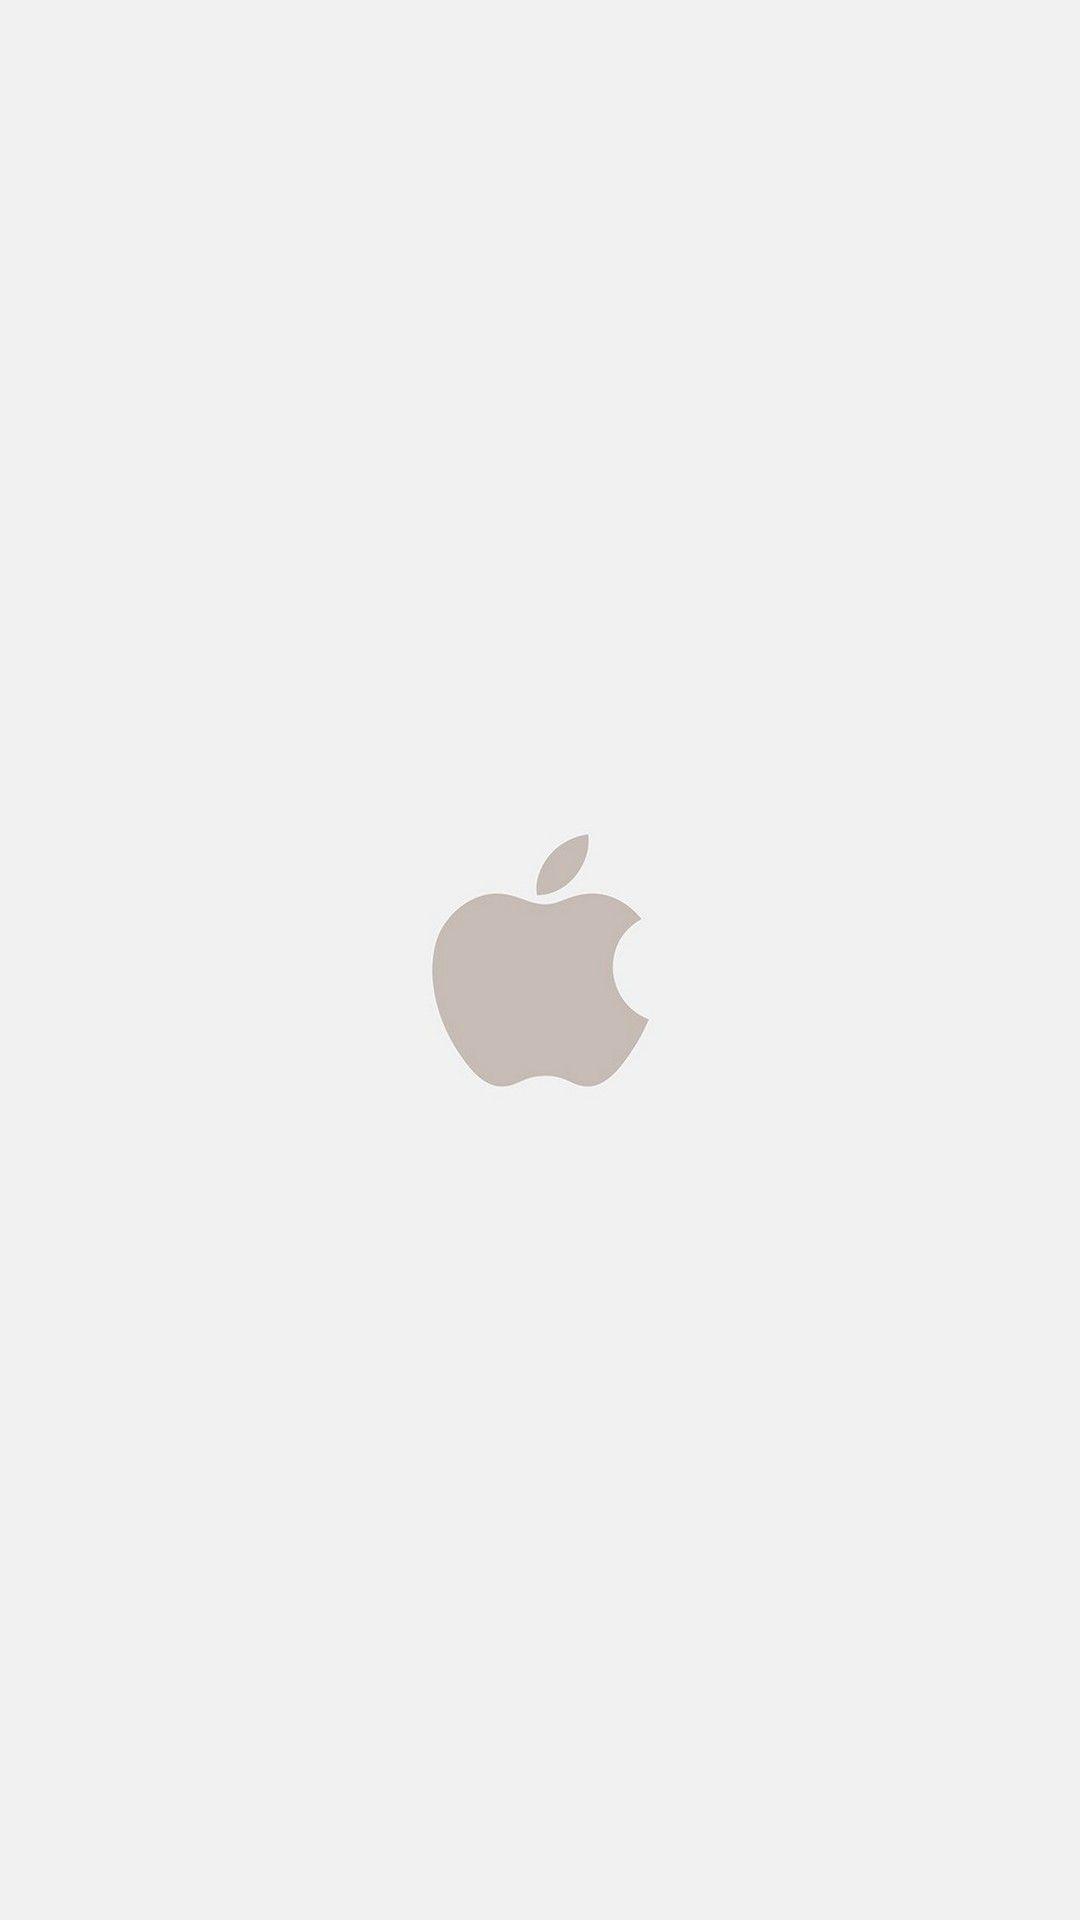 1080x1920 Màn Hình Khóa Hình Nền iPhone - 2020 Hình Nền iPhone Dễ Thương